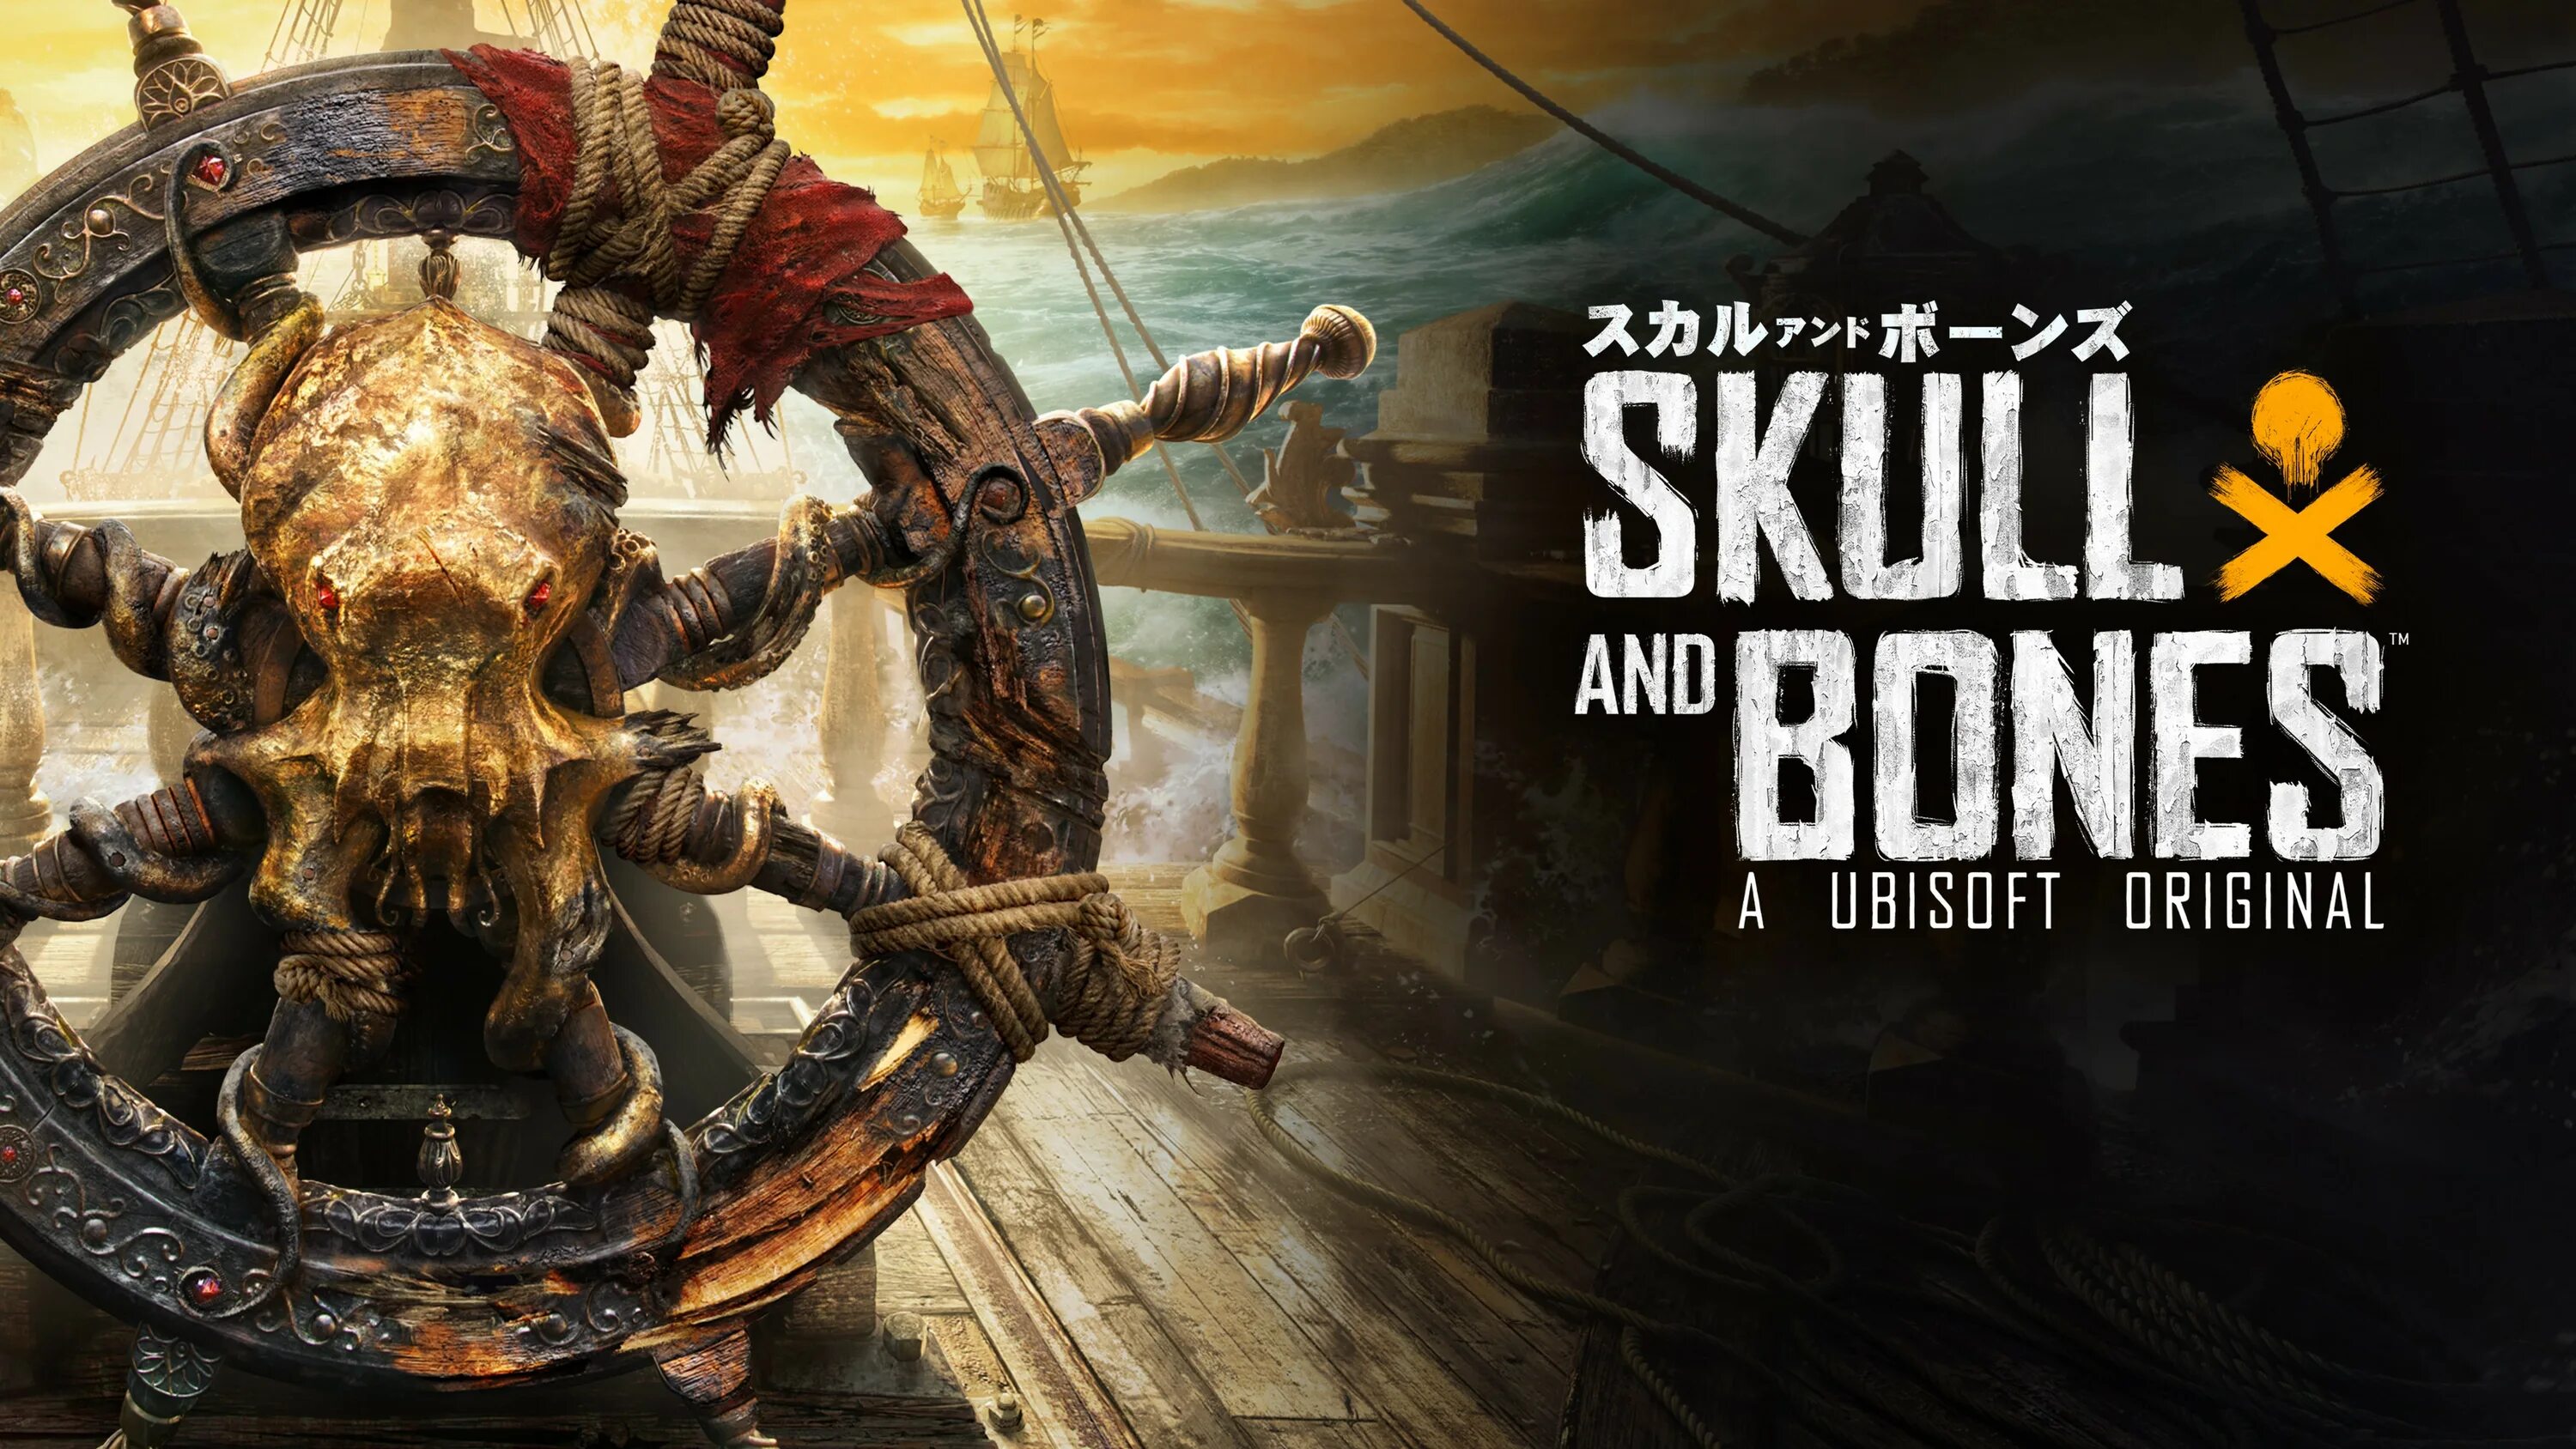 Игра “Skull & Bones” (2020). Skull and Bones игра корабли. Череп и кости игра юбисофт.